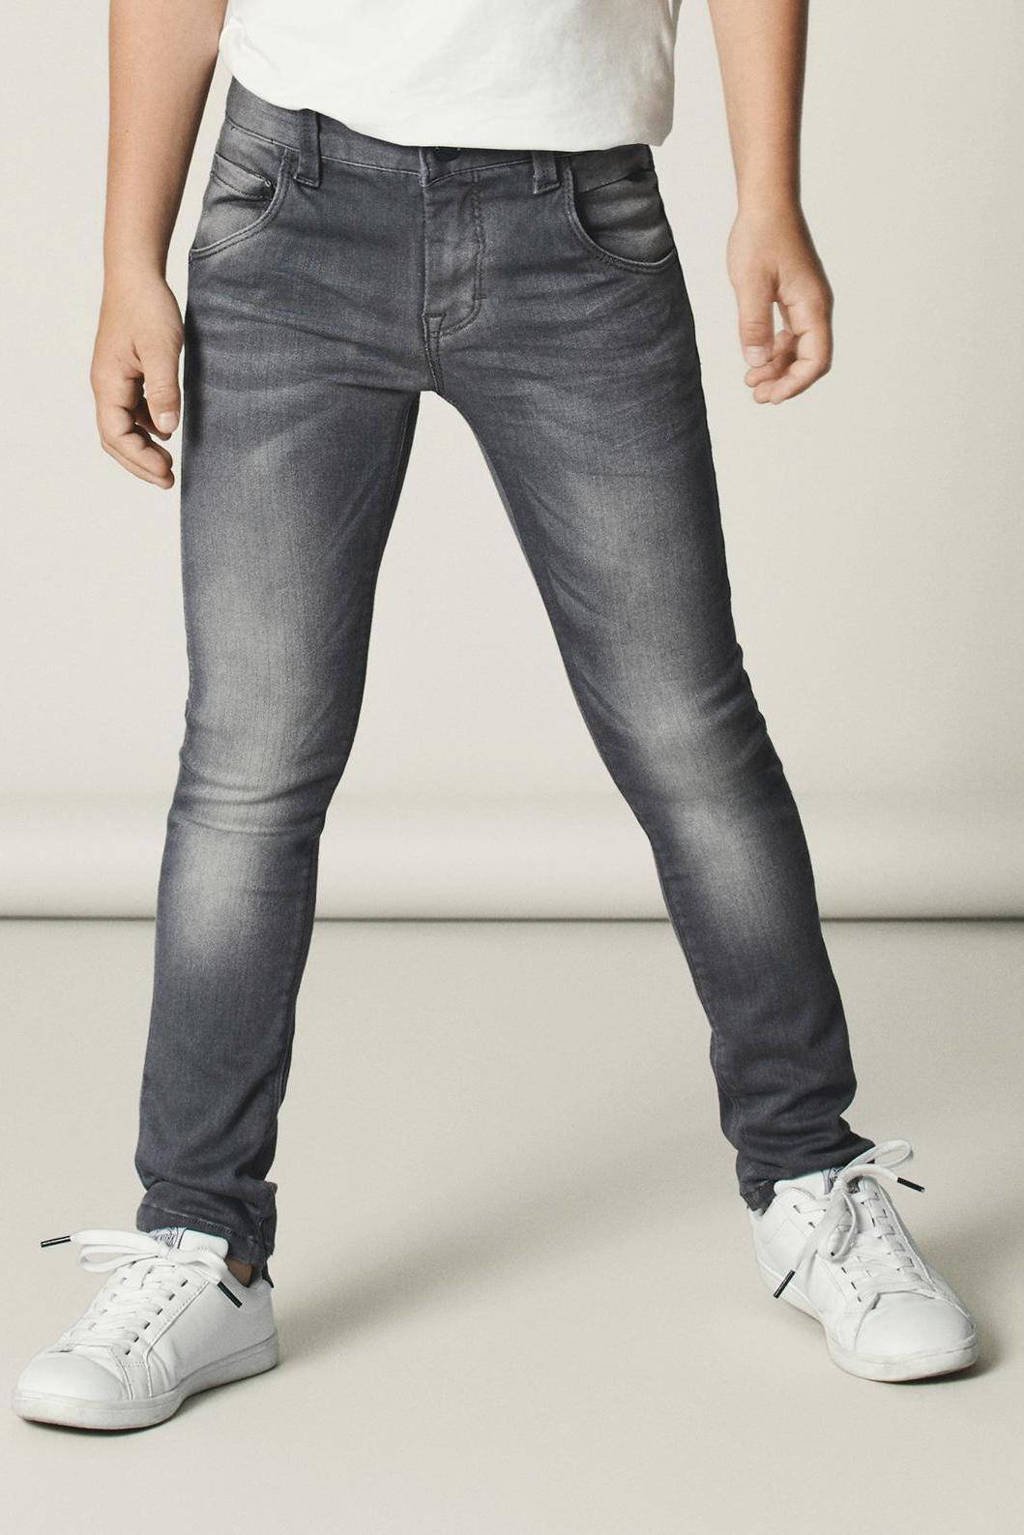 bureau doorboren peper NAME IT x-slim fit jeans NITCLA grijs | wehkamp